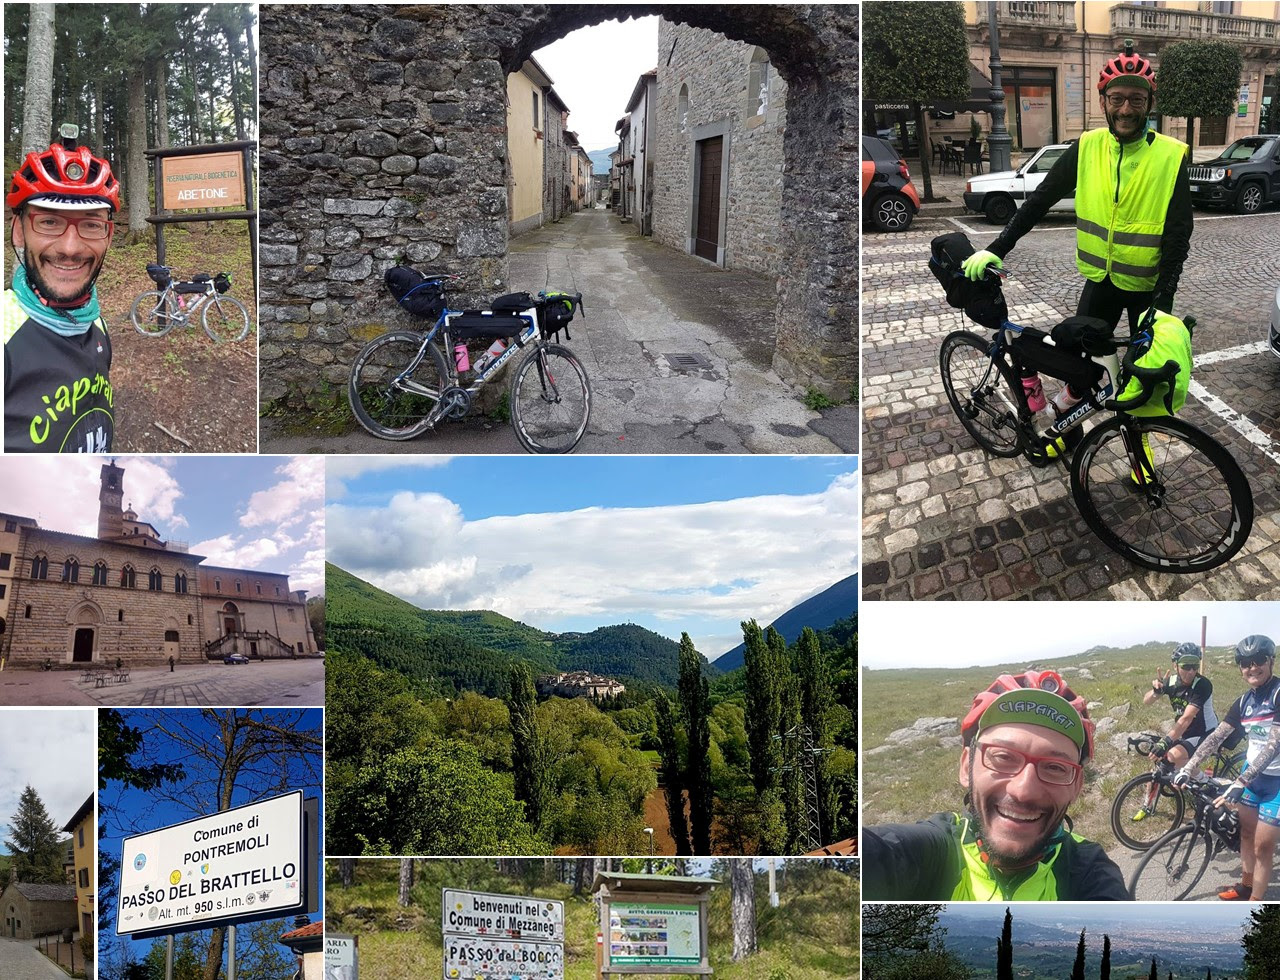 Italy Bike Tour 2021 Oceanus, l'iniziativa della onlus per una transizione ecologica a due ruote con protagonista Ivan Negretti